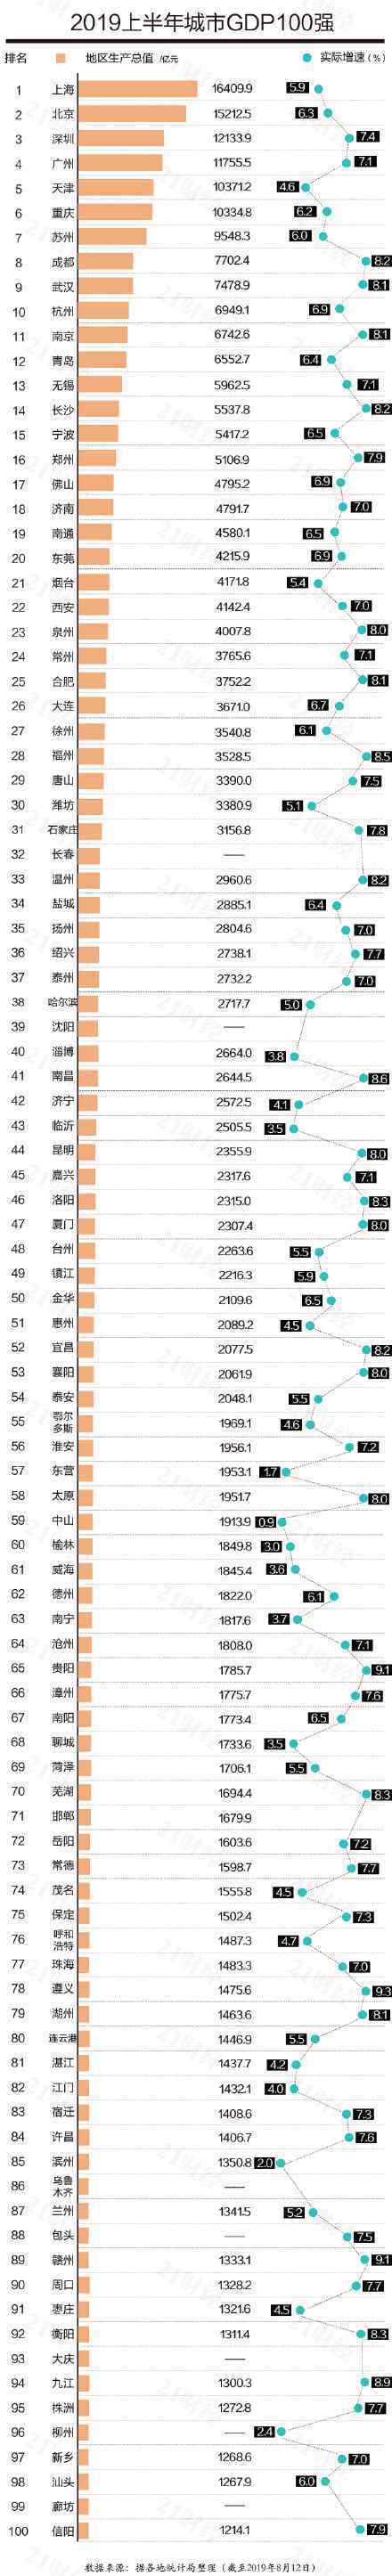 最新中国城市GDP百强榜 前20名是哪些城市